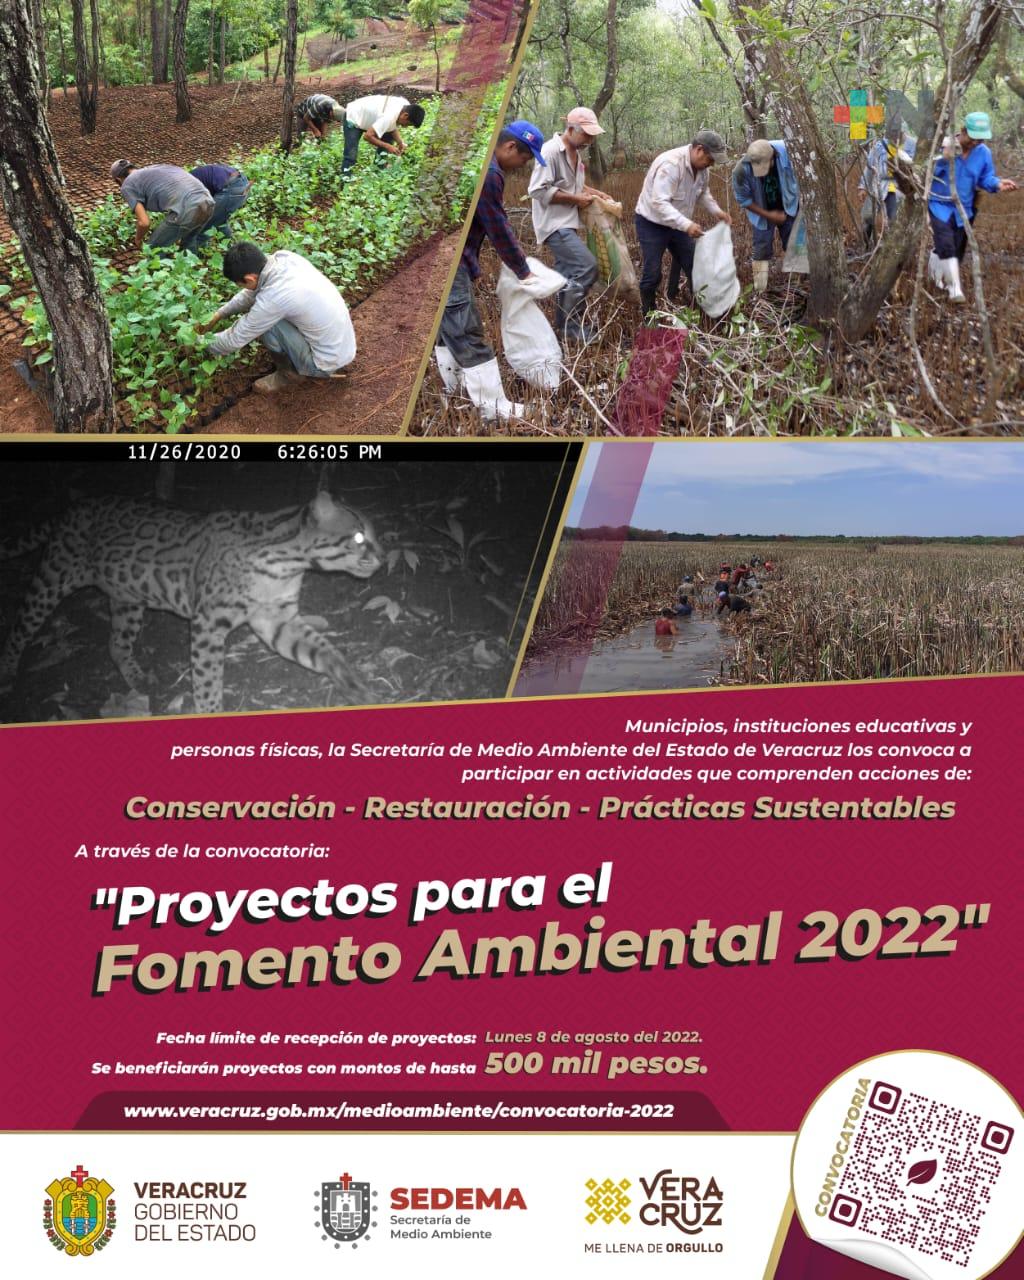 Sedema apoyará 25 propuestas del programa “Proyectos para el Fomento Ambiental 2022” 